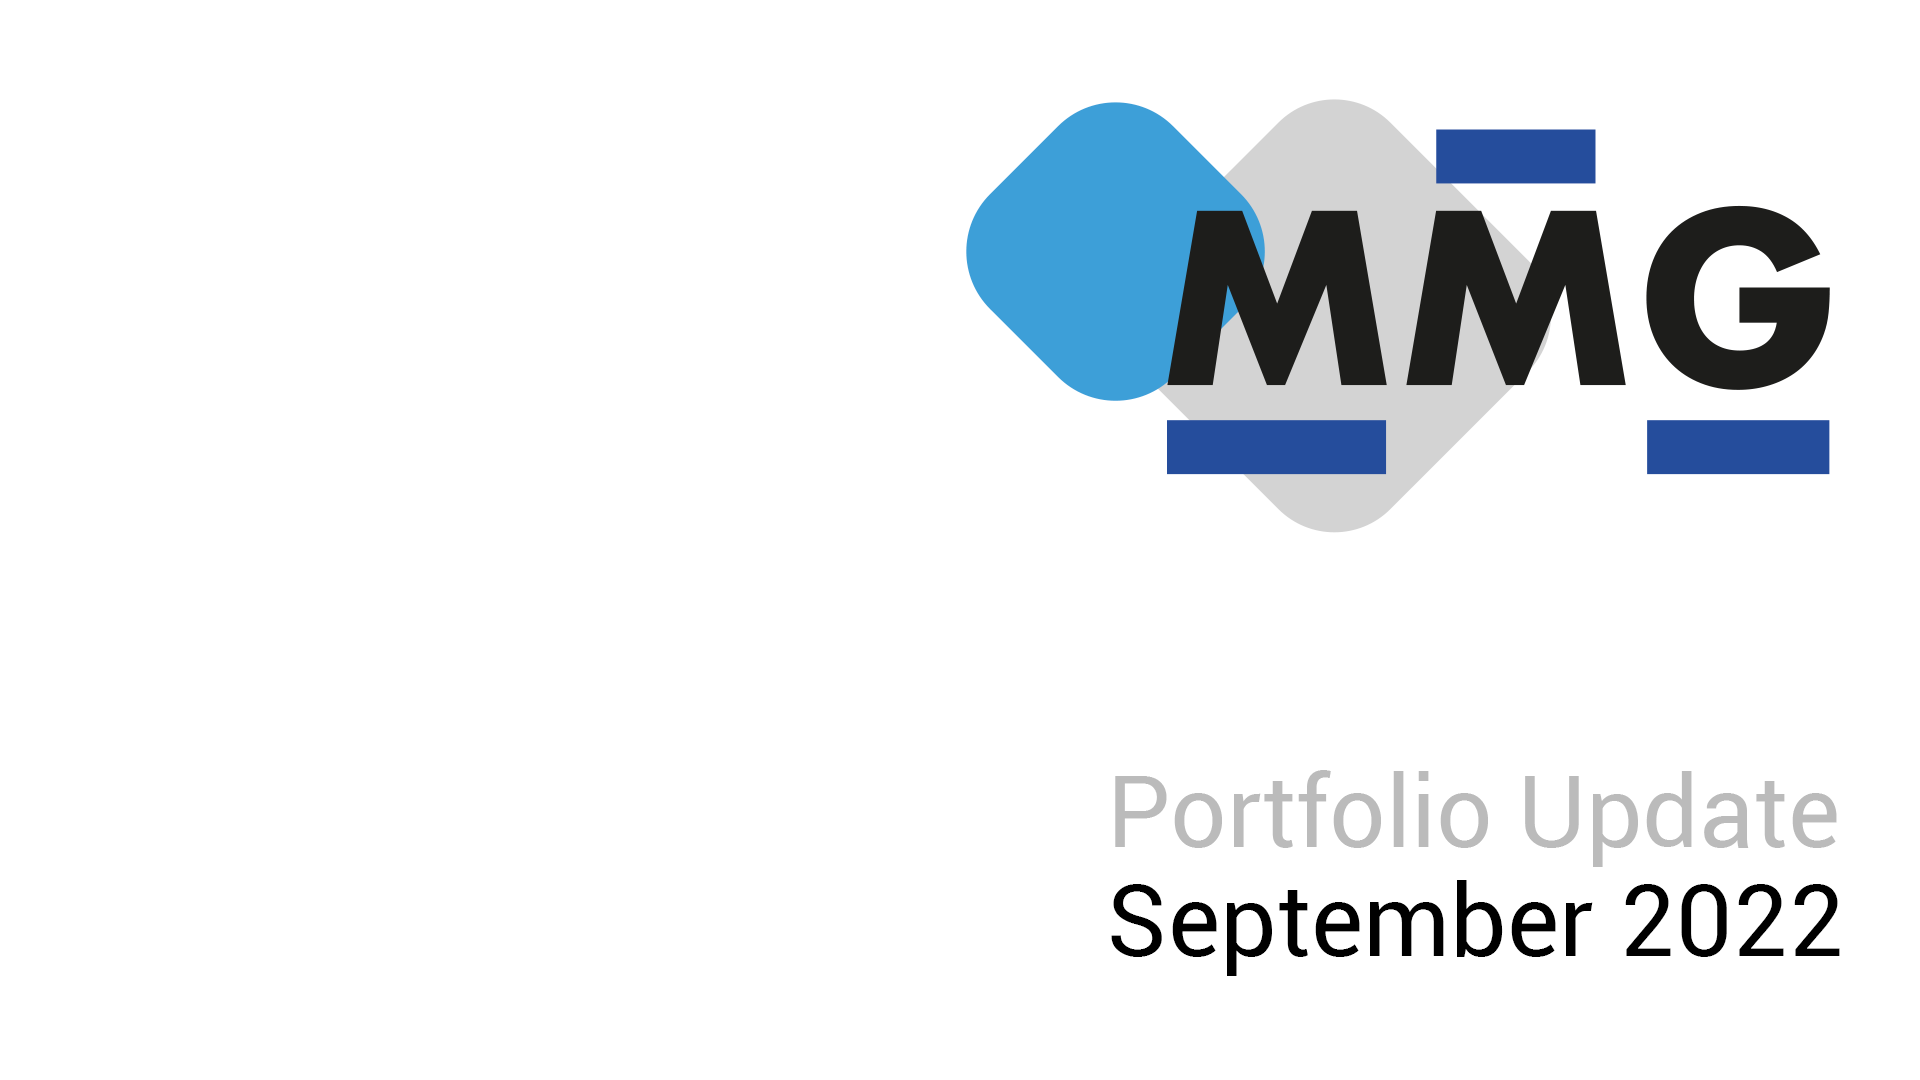 Matteo Marinelli Portfolio Update - September 2022